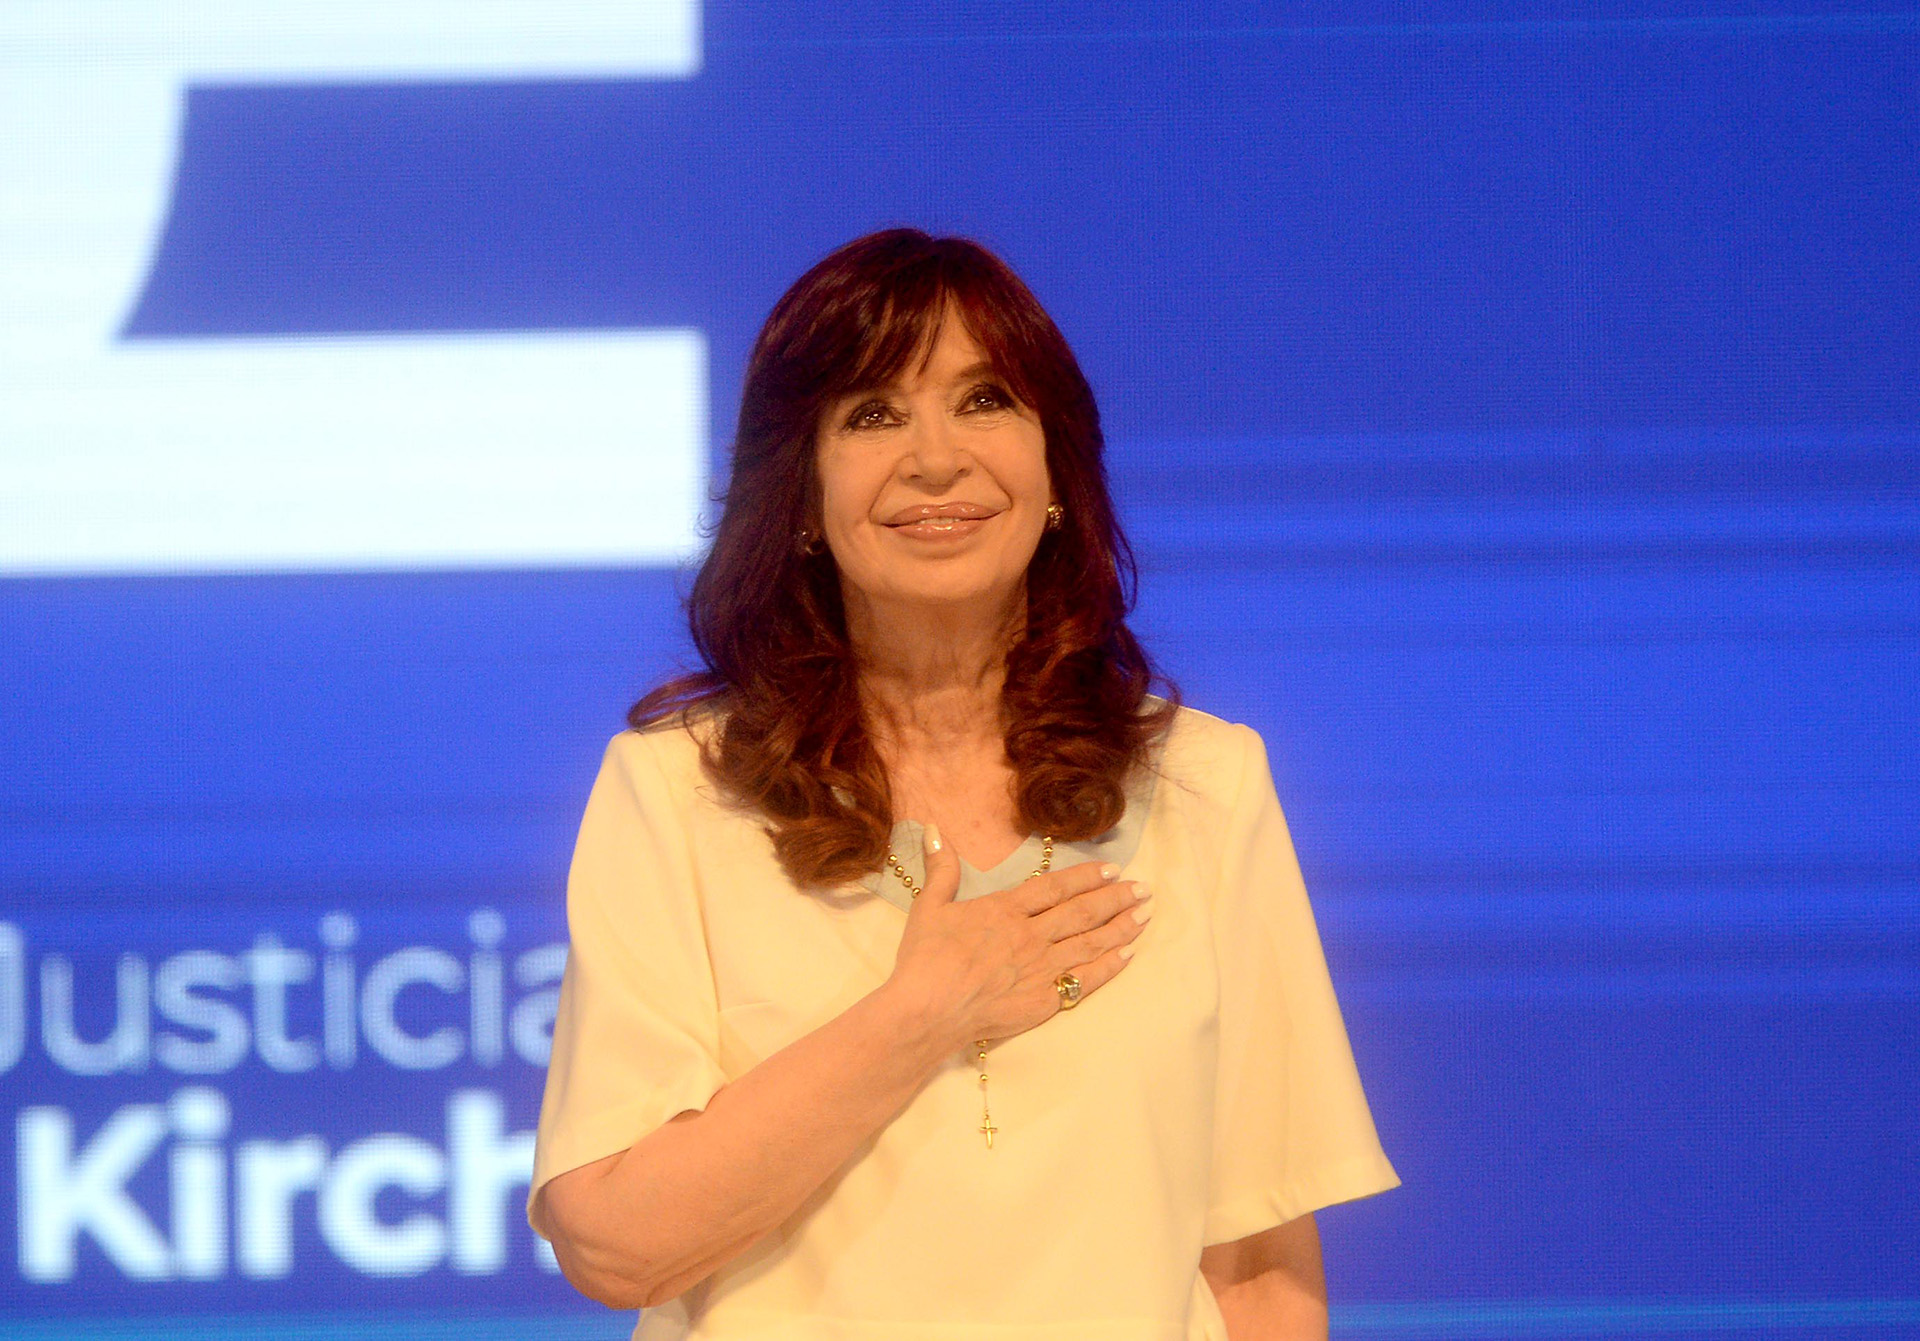 Acto del 25 de Mayo con Cristina Kirchner, en vivo: confirmados, horario y todos los detalles, minuto a minuto